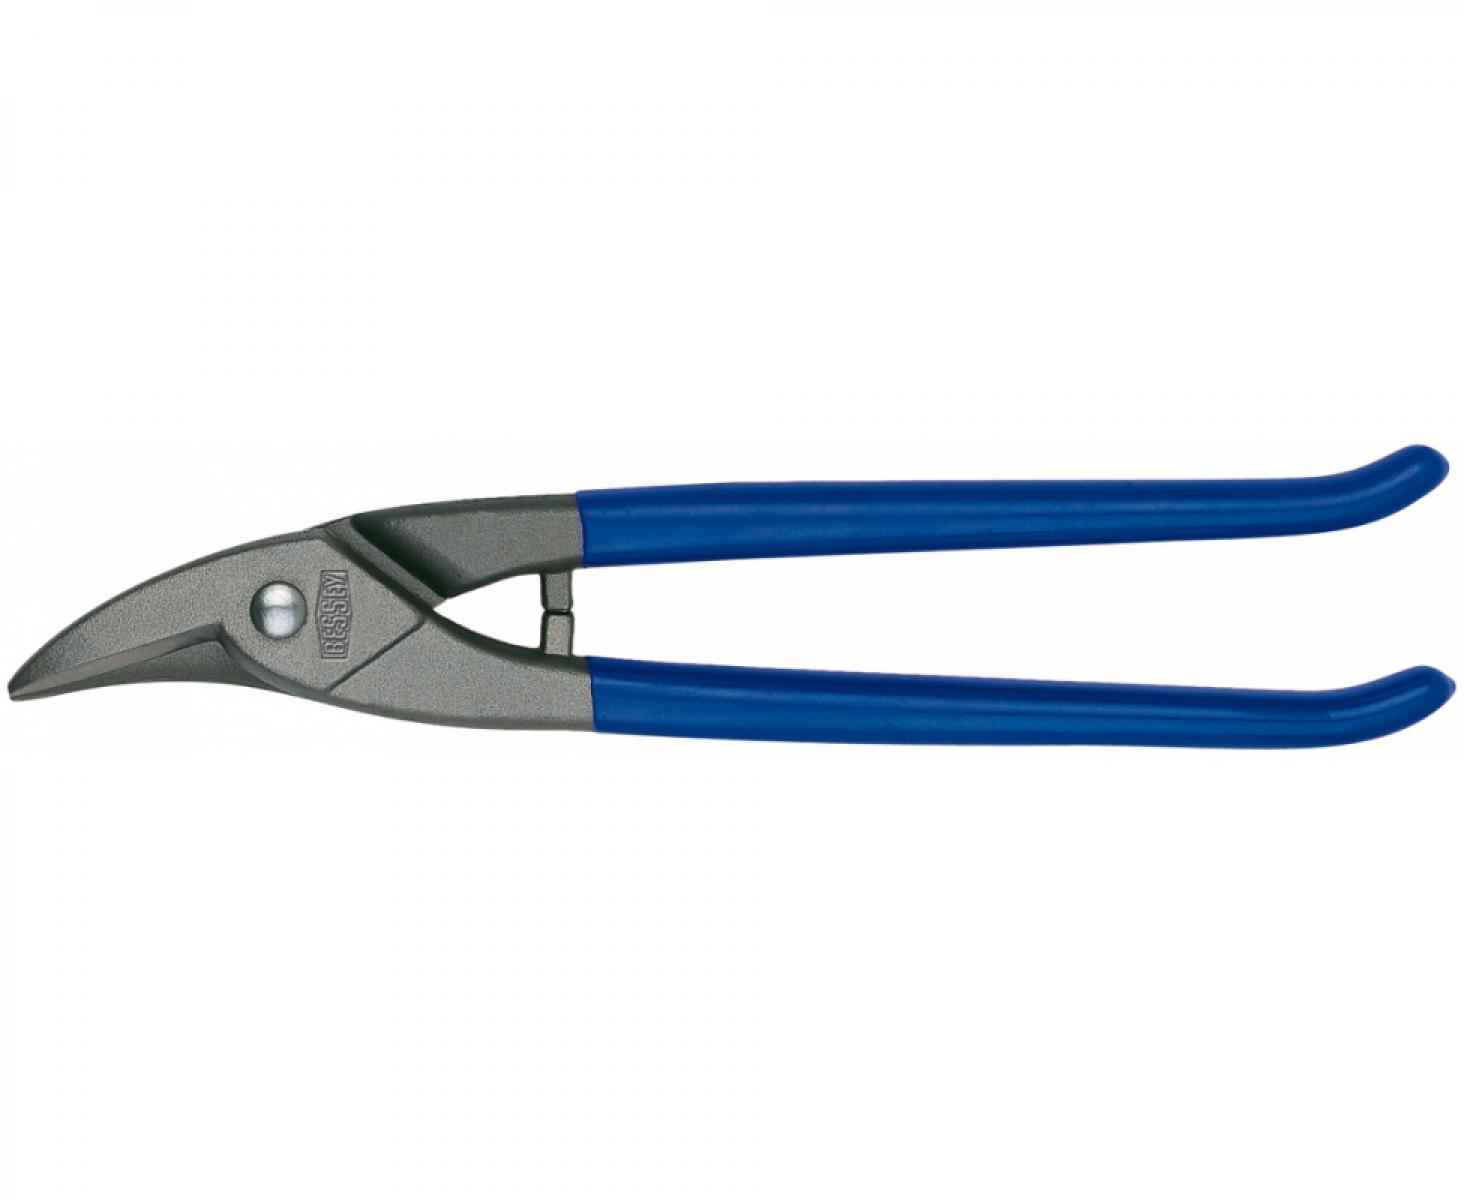 Фигурные обычные ножницы для отверстий Erdi ER-D214-250 праворежущие